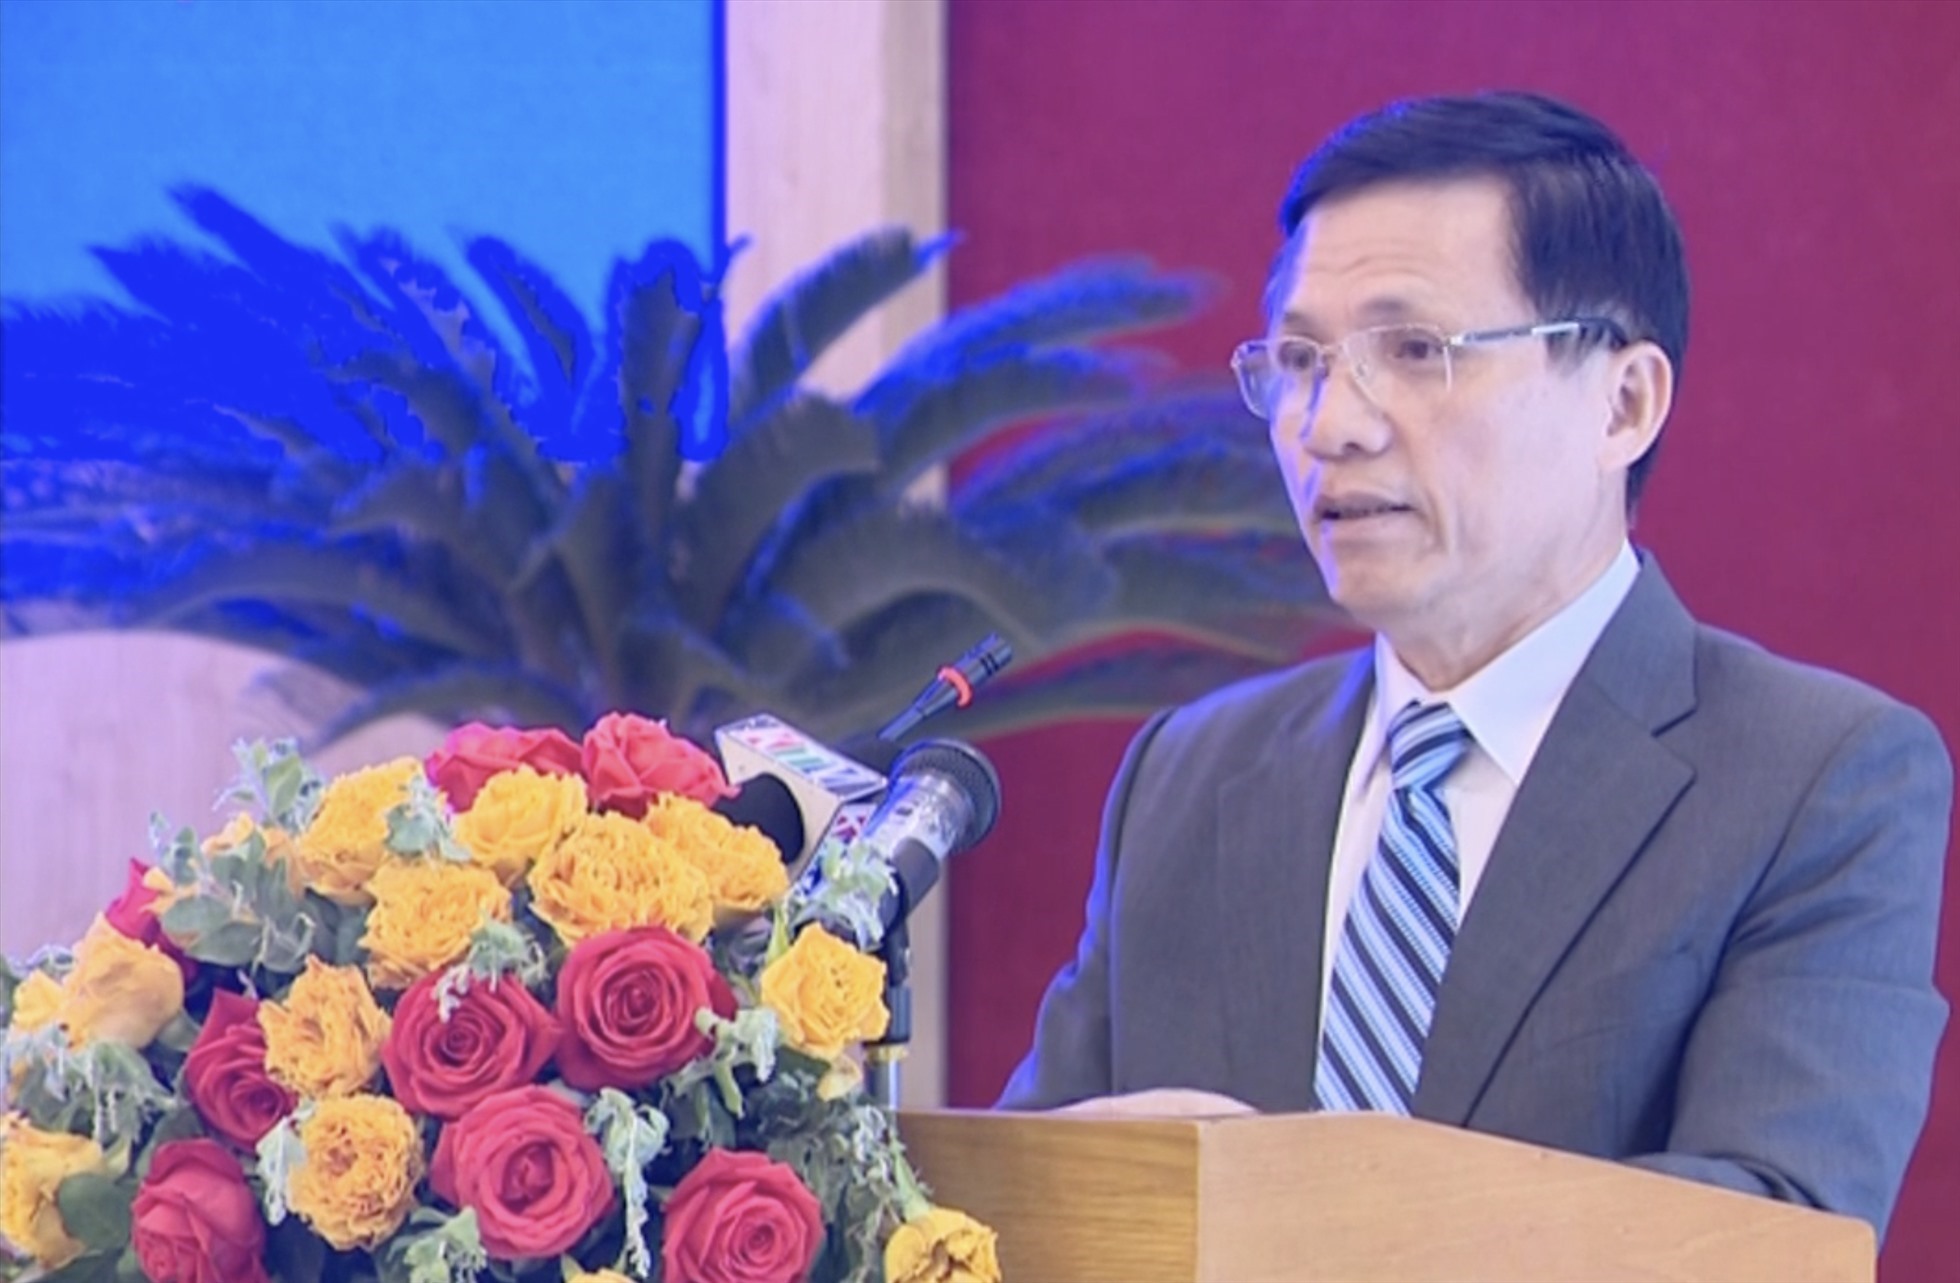 Ông Bùi Xuân Minh nói rằng Công ty Anh Khoa Trúng thầu là đúng quy định, không ưu ái doanh nghiệp. Ảnh Thu Cúc